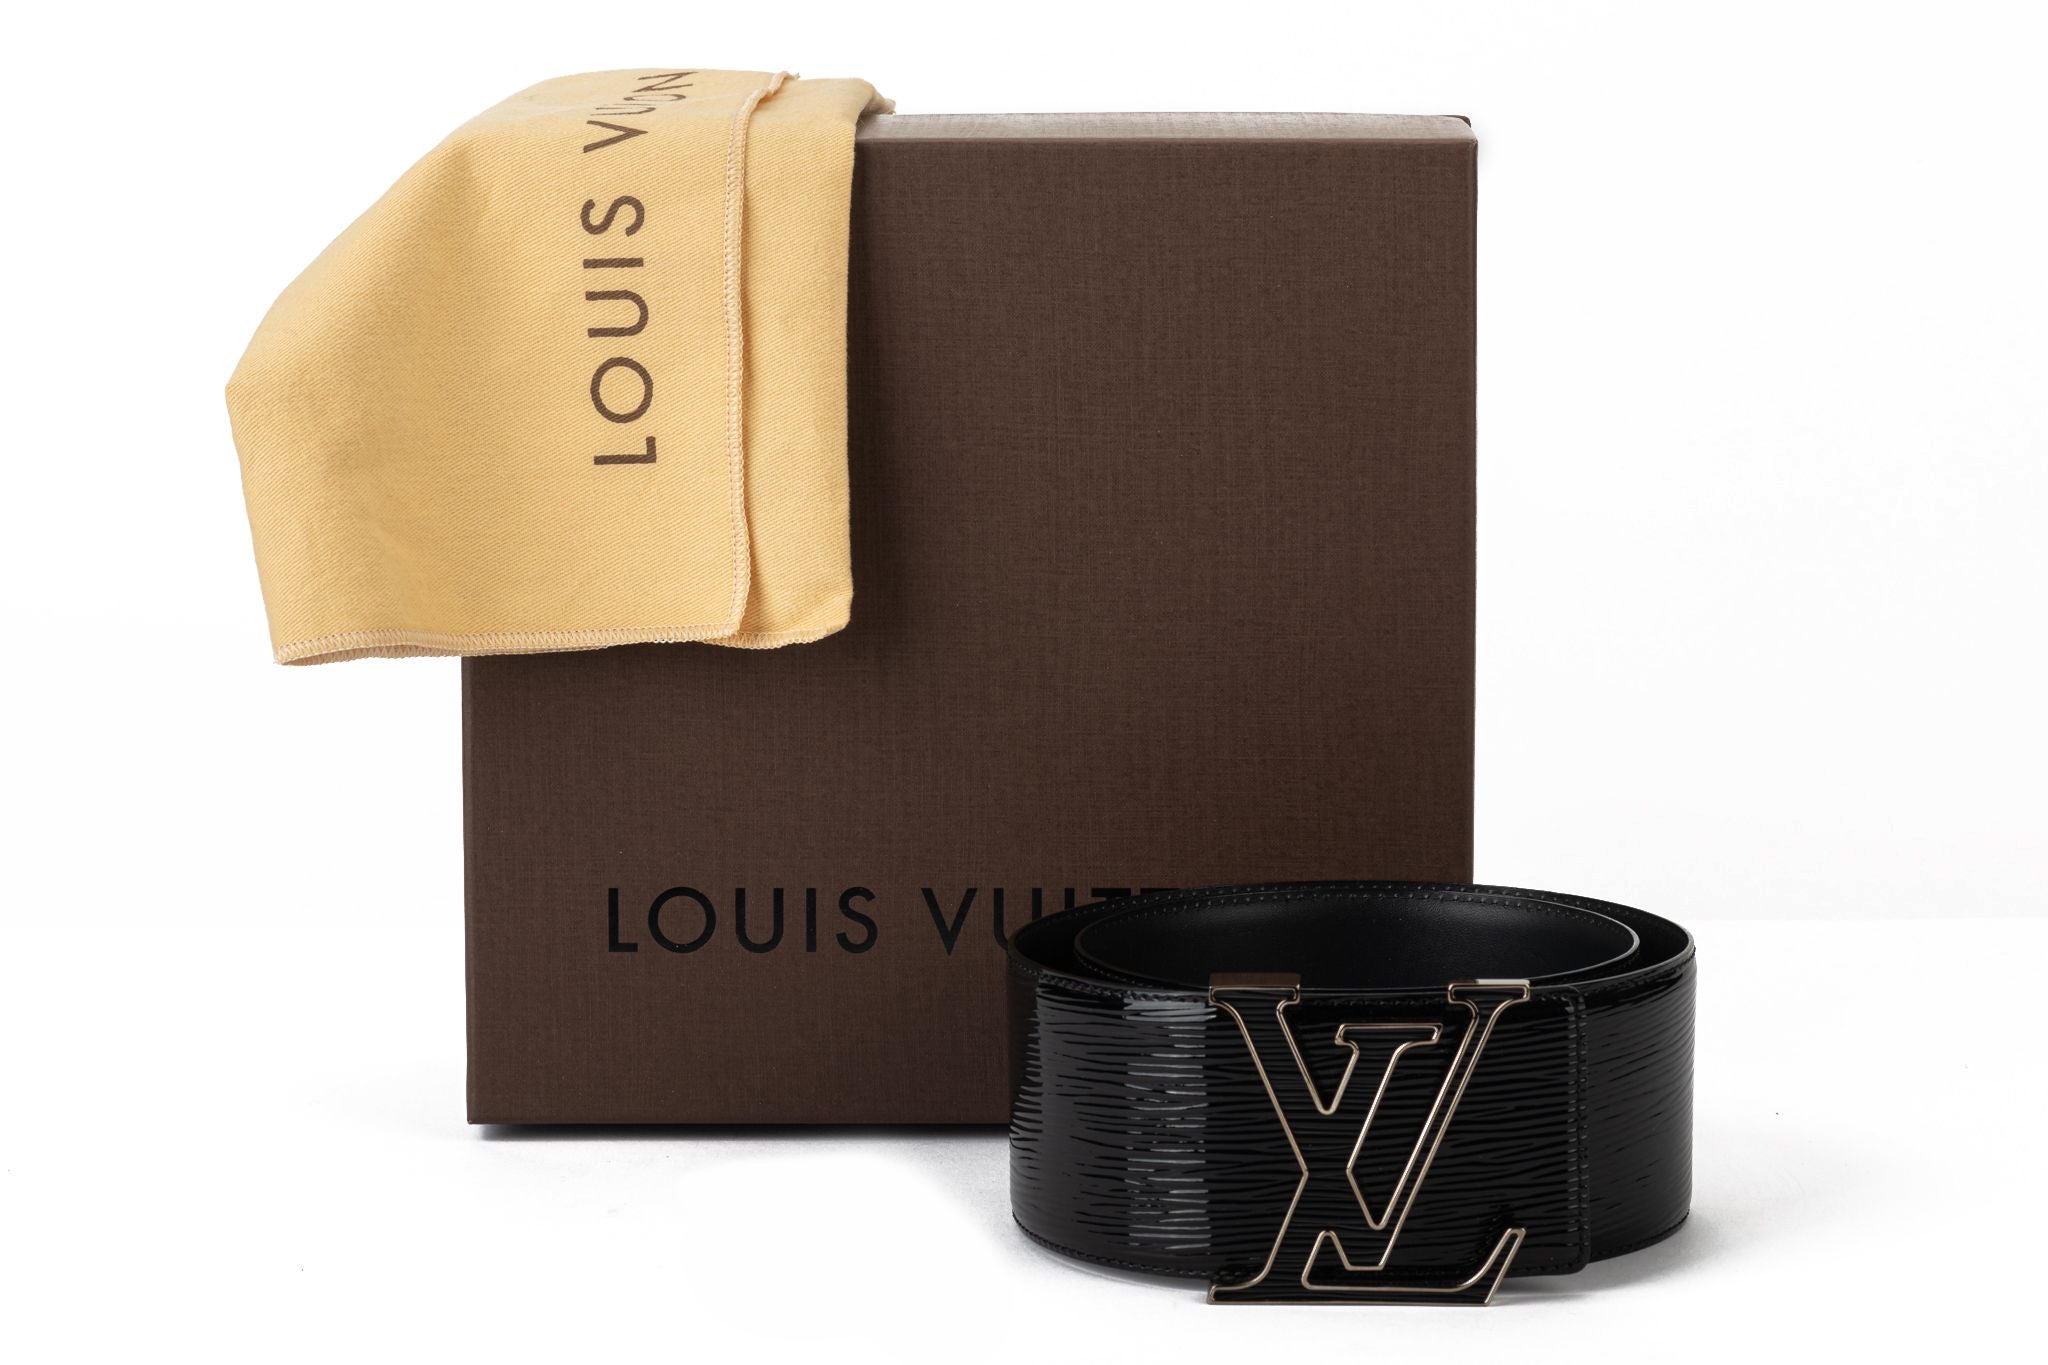 LOUIS VUITTON, black epi leather belt, gold metal buckle…